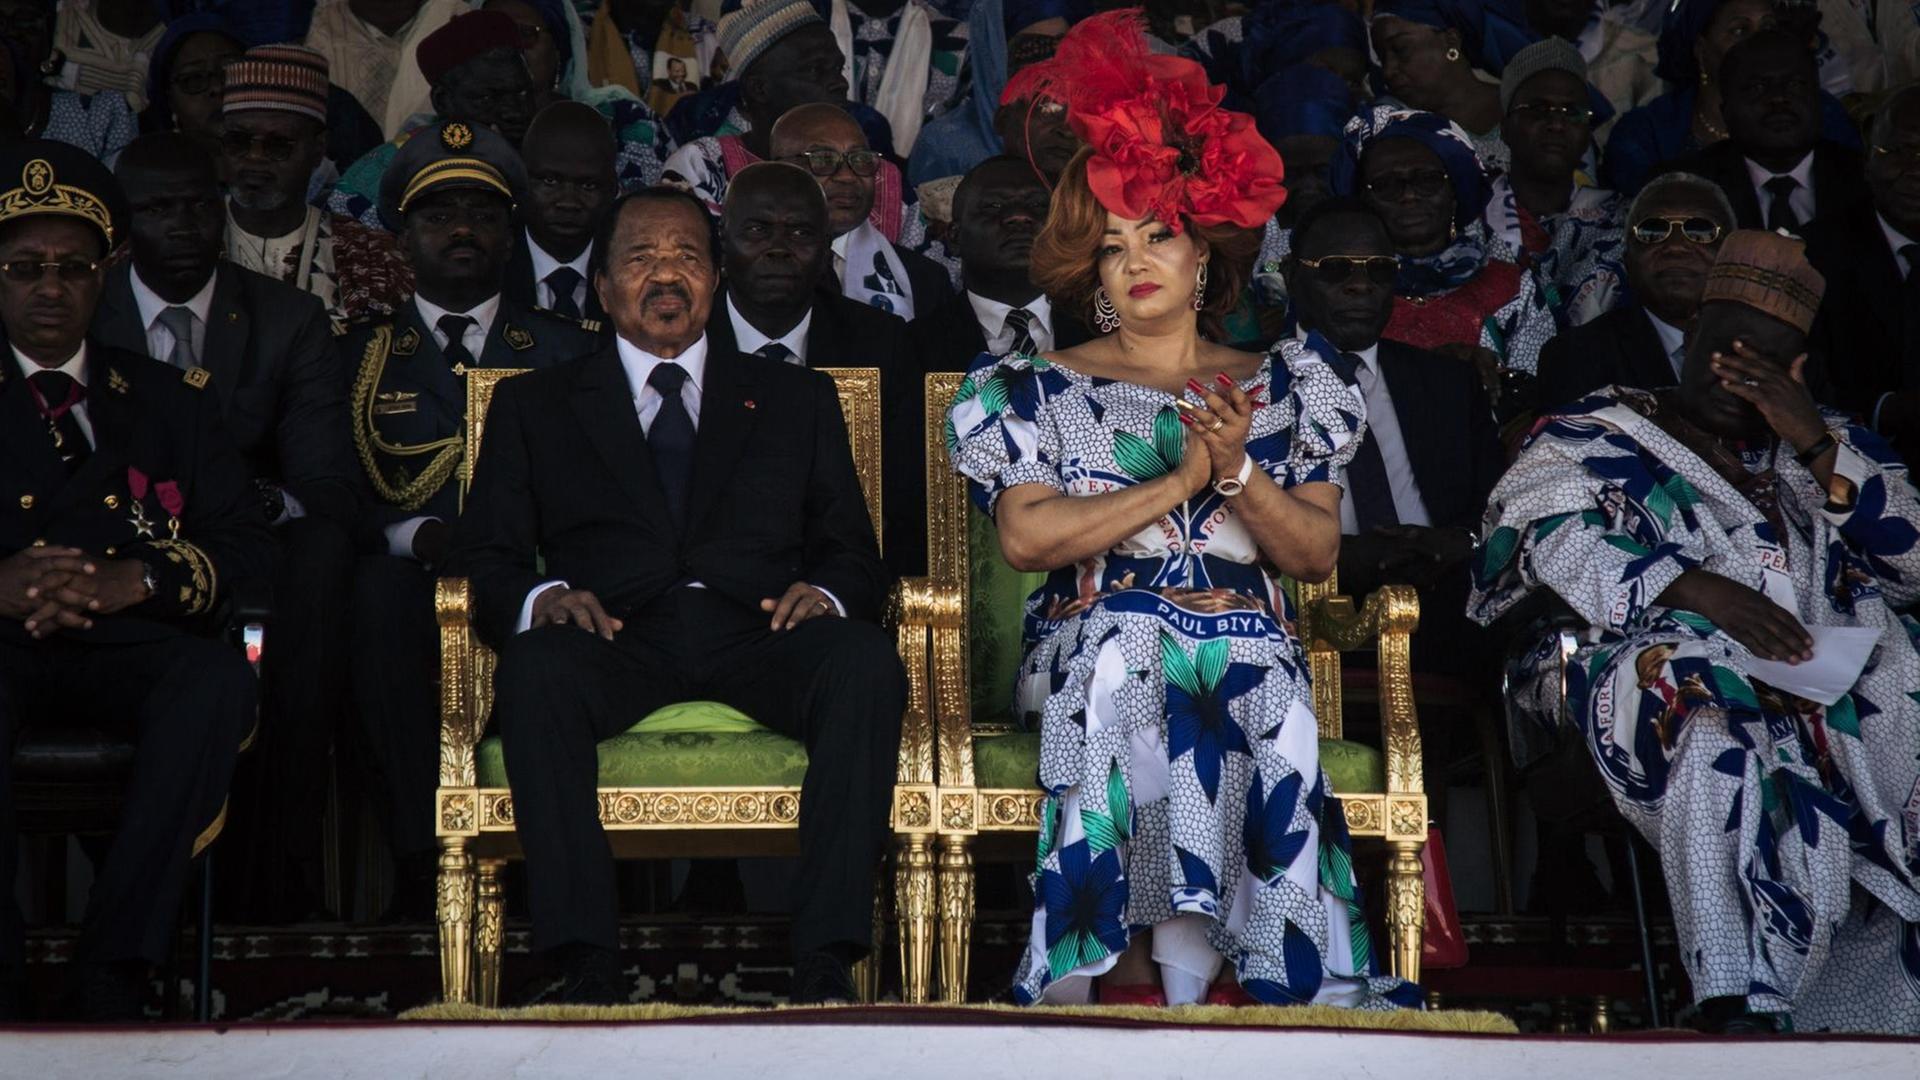 Der kamerunische Präsident Paul Biya und seine Frau Chantal Biya hören während einer Wahlkundgebung im Maroua Stadion in der Region Far North von Kamerun Reden zu Ehren von Biyas Herrschaft zu. )